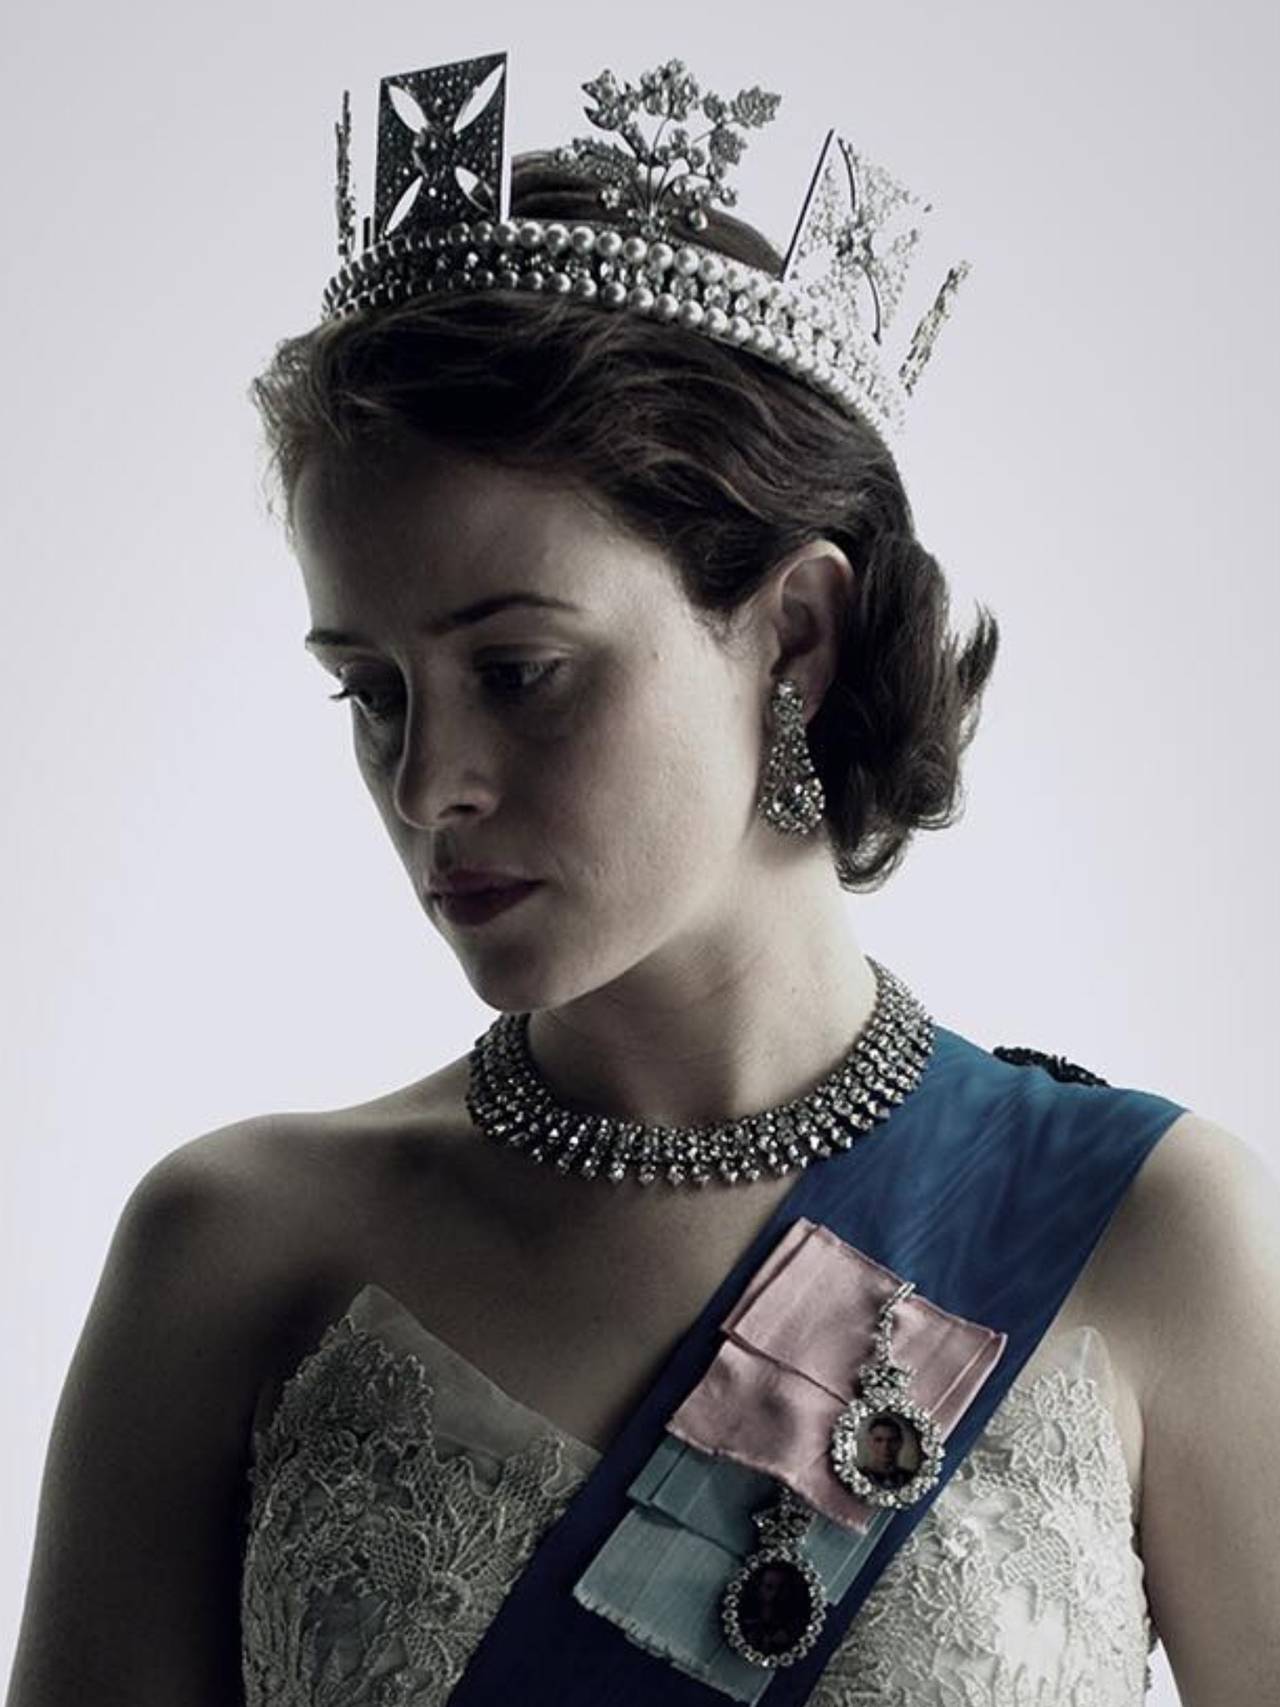 Sueldo. La actriz quien interpreta a la reina Isabel recibio 168  mdp.